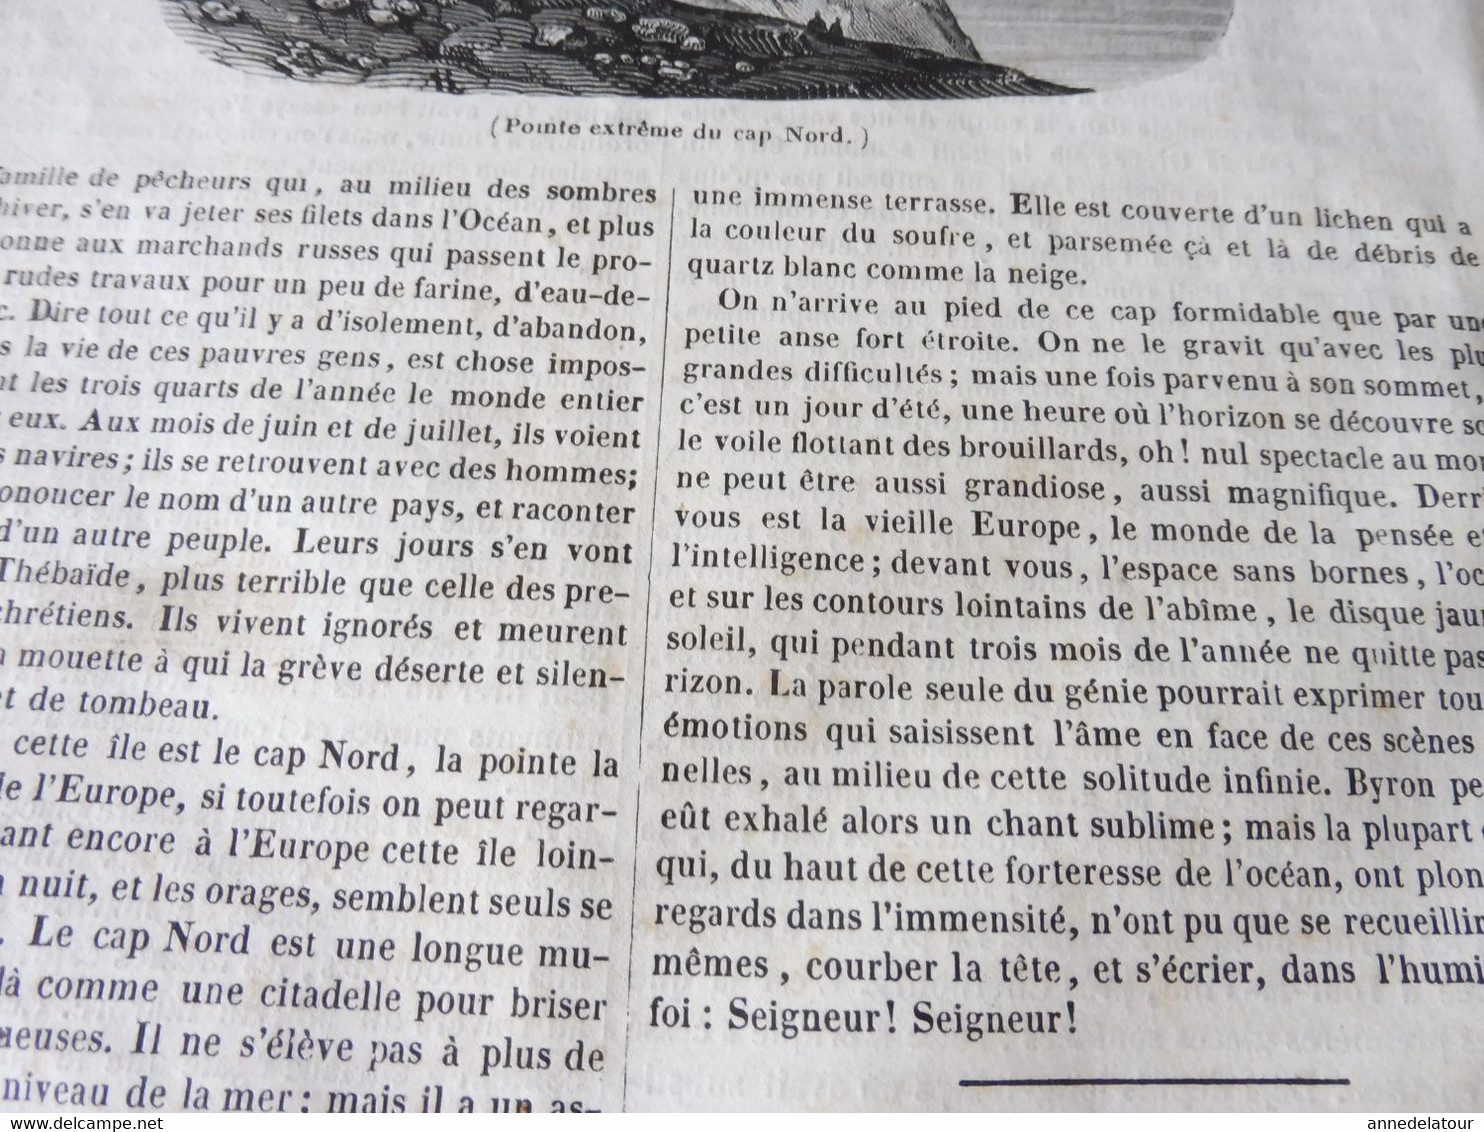 1839 MP  Auberge de Laveno  (Lago Maggiore ) ; Eglises à ( Poitiers, Avignon, Arles); Cap Nord ( l'île Maigre); Etc